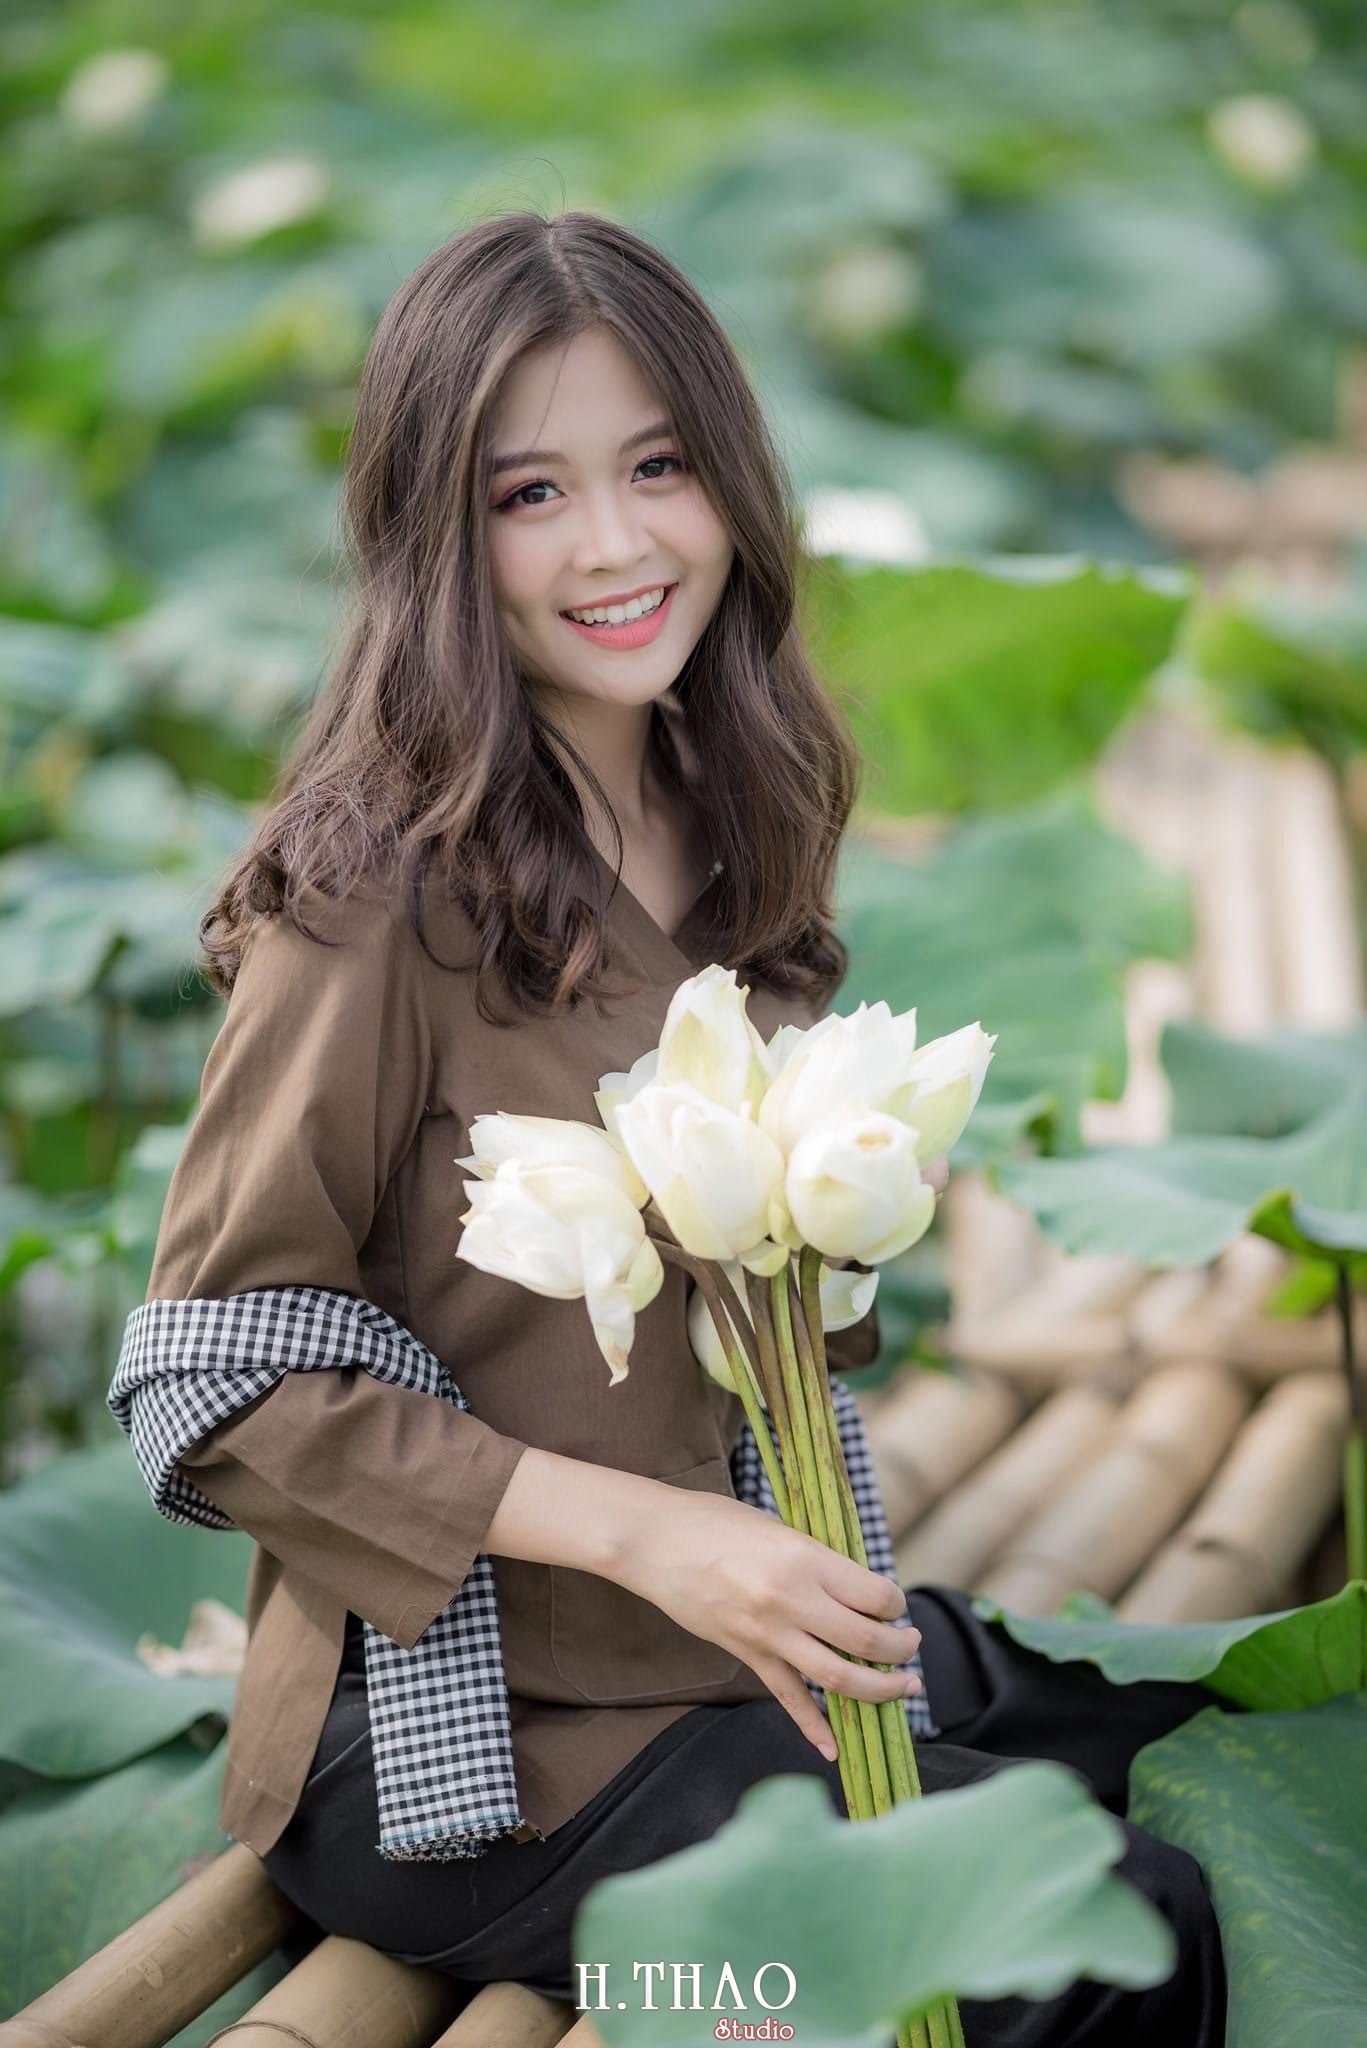 ao ba ba 3 - 39 cách tạo dáng chụp ảnh với hoa sen tuyệt đẹp - HThao Studio